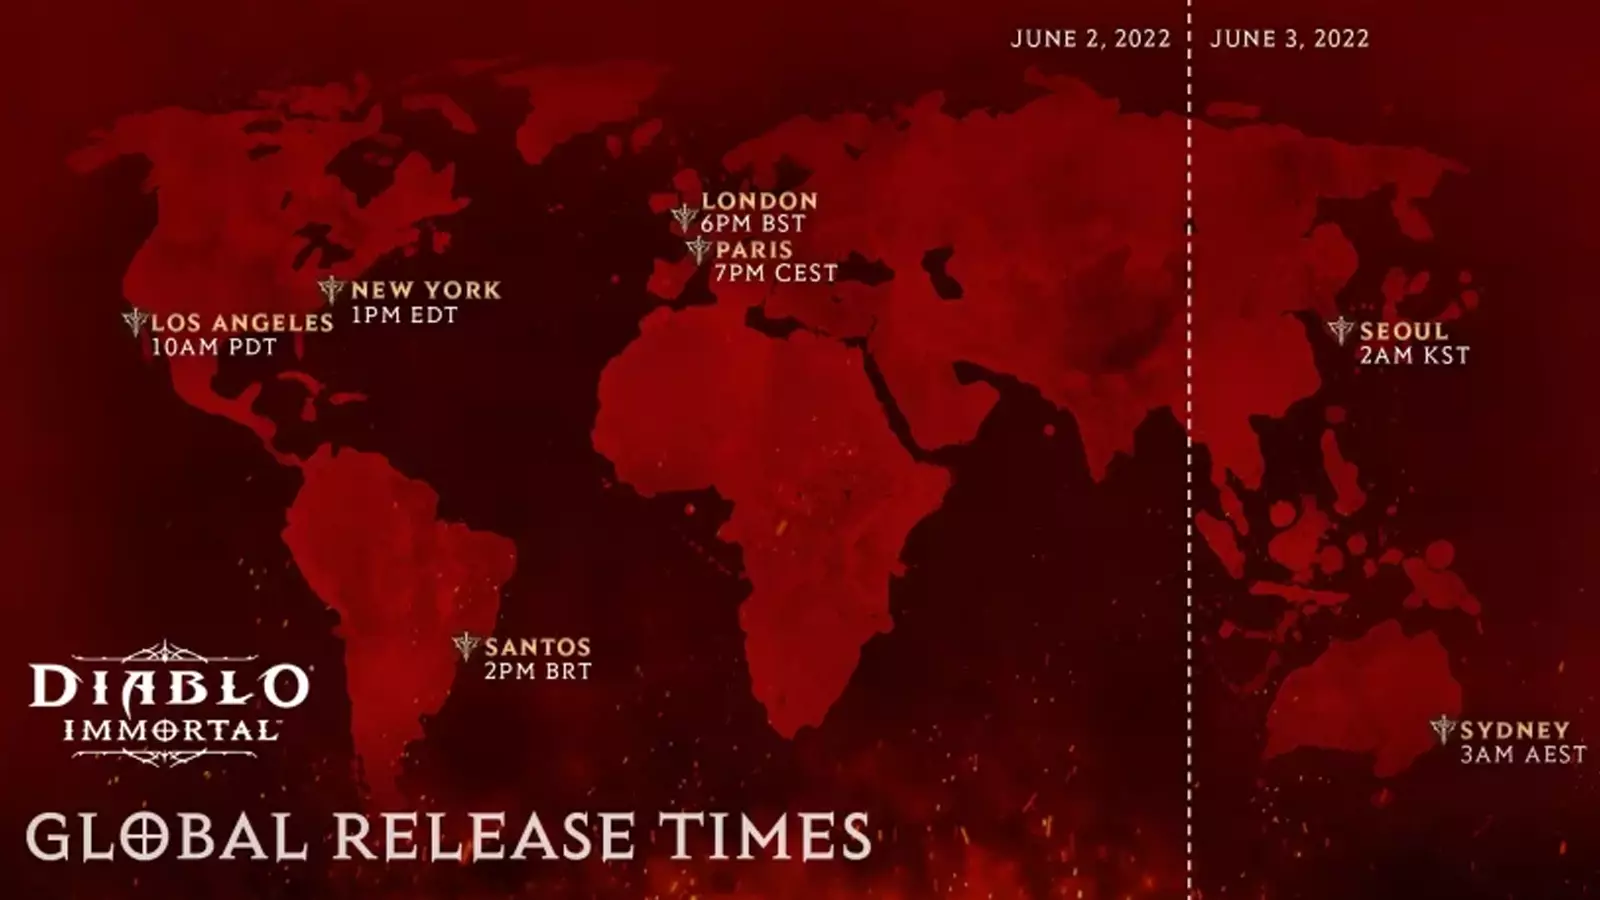 diablo immortal release times global